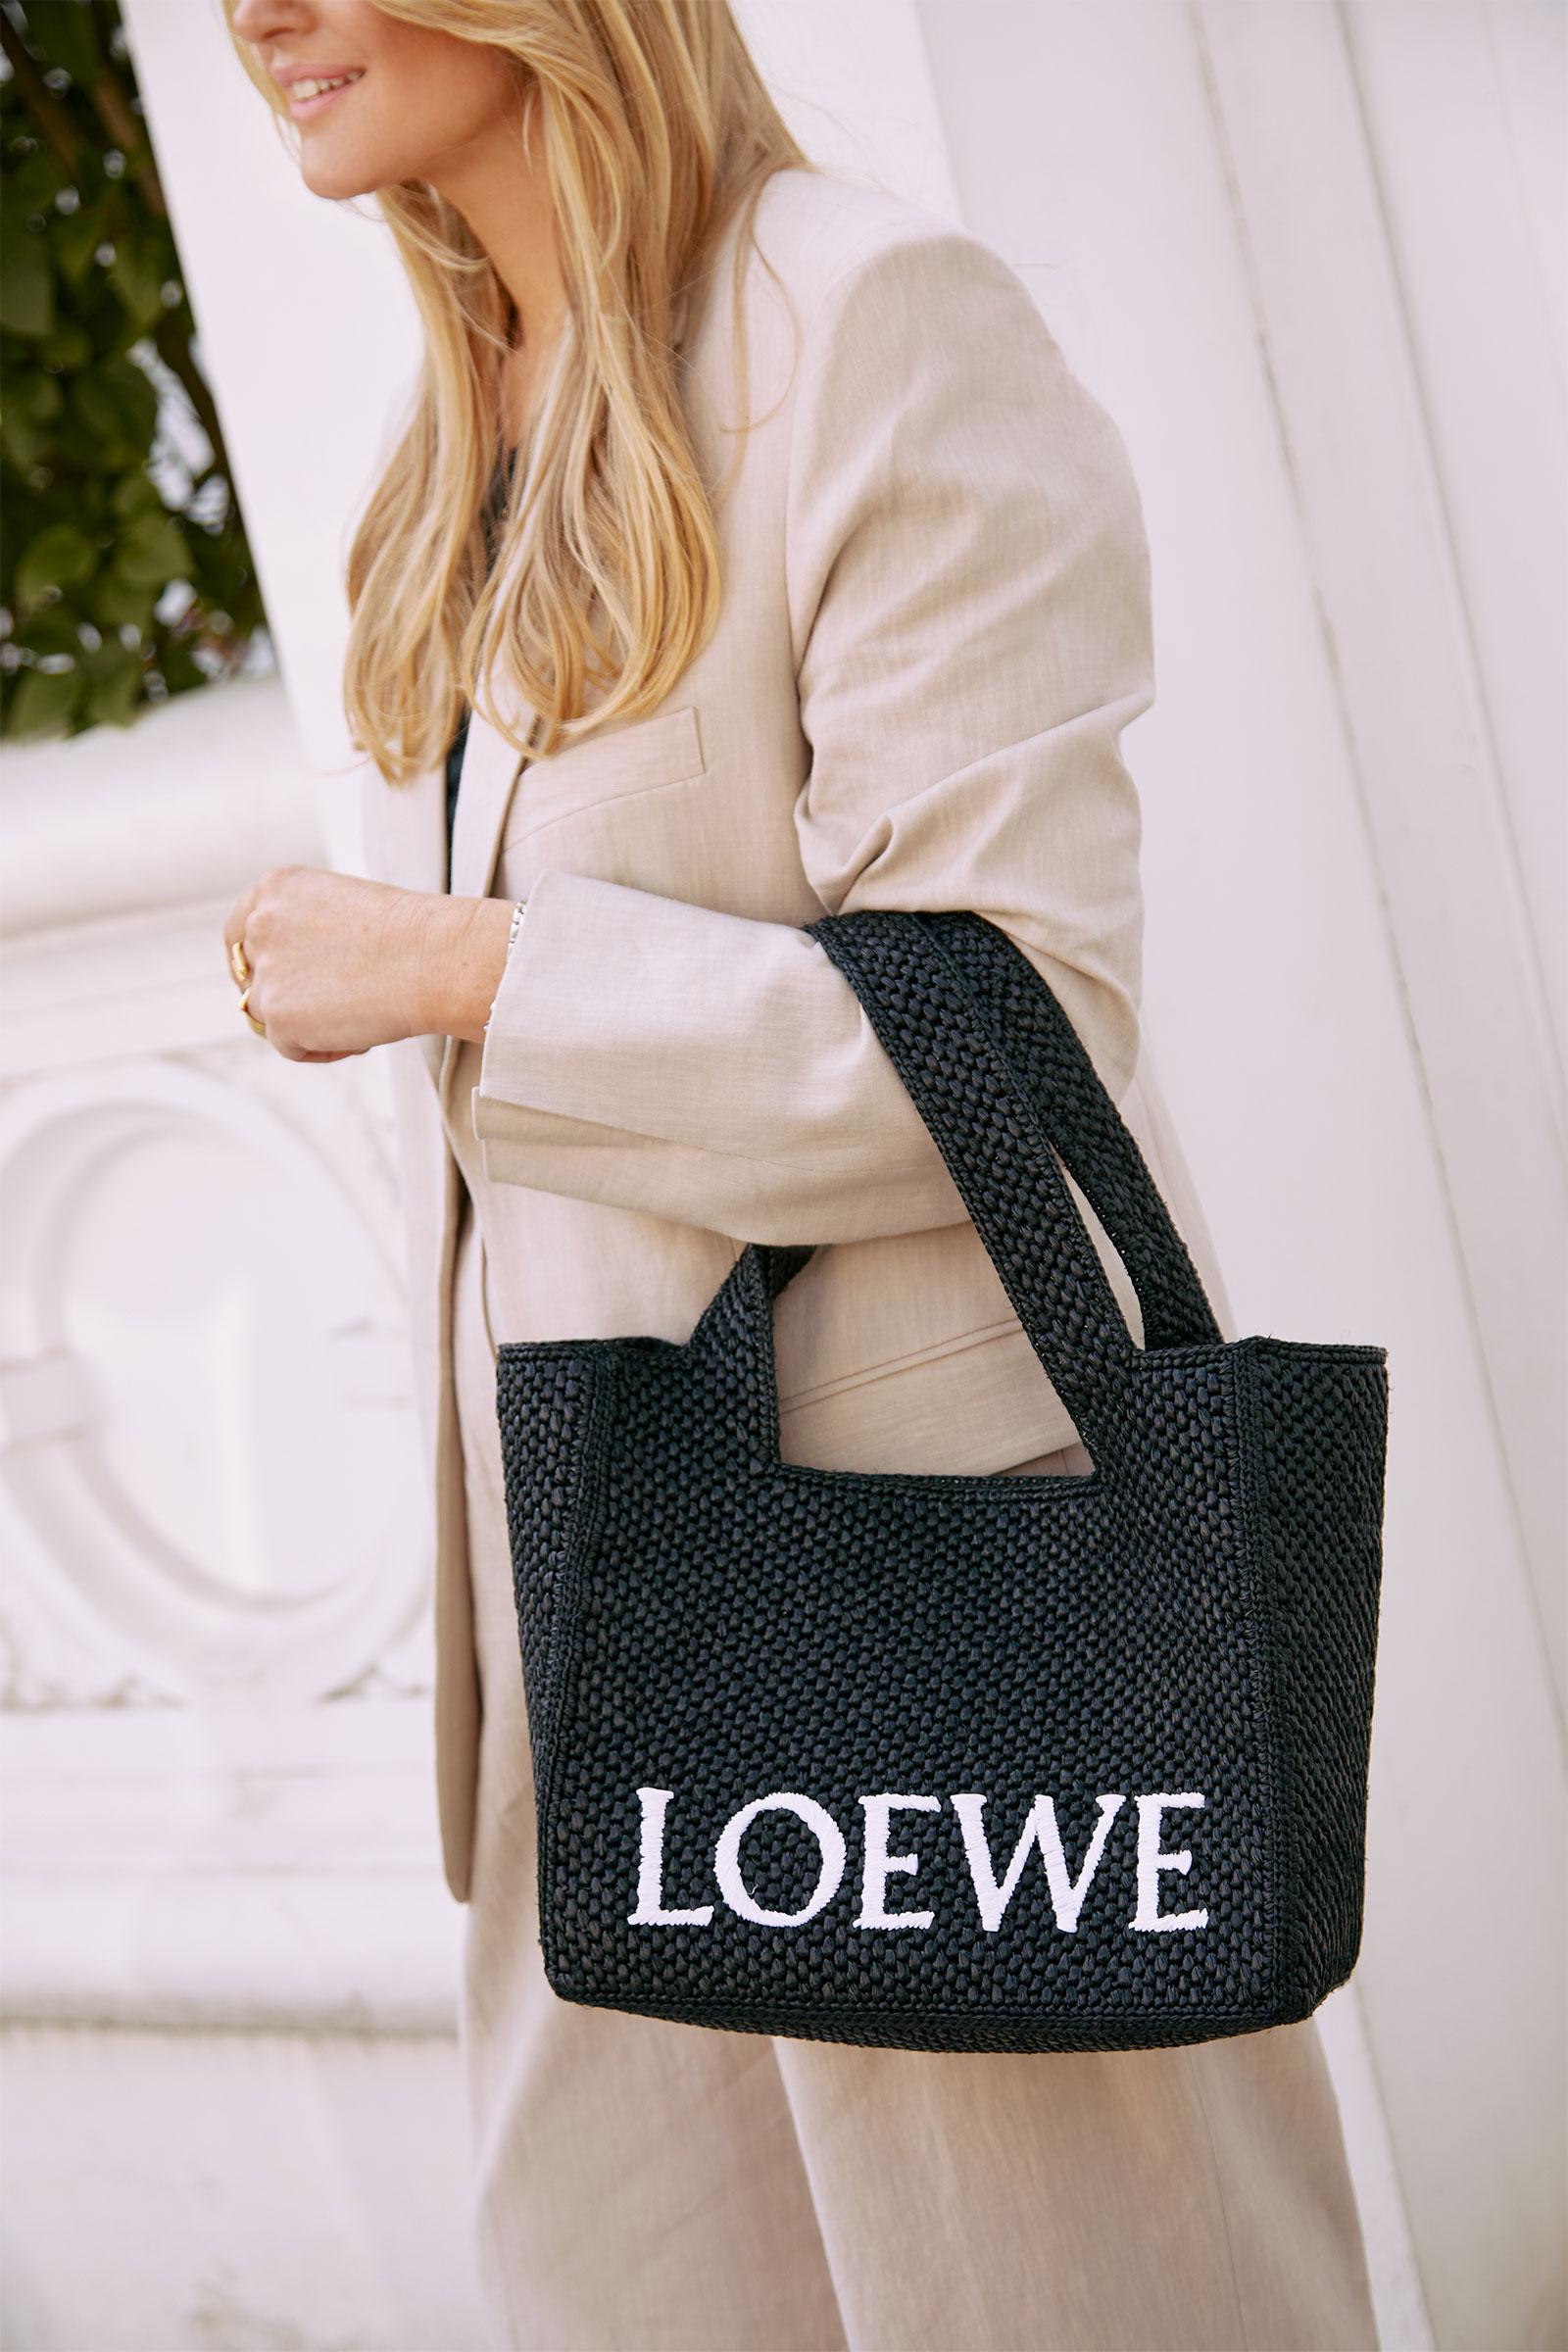 Loewe Women's Large Font Tote